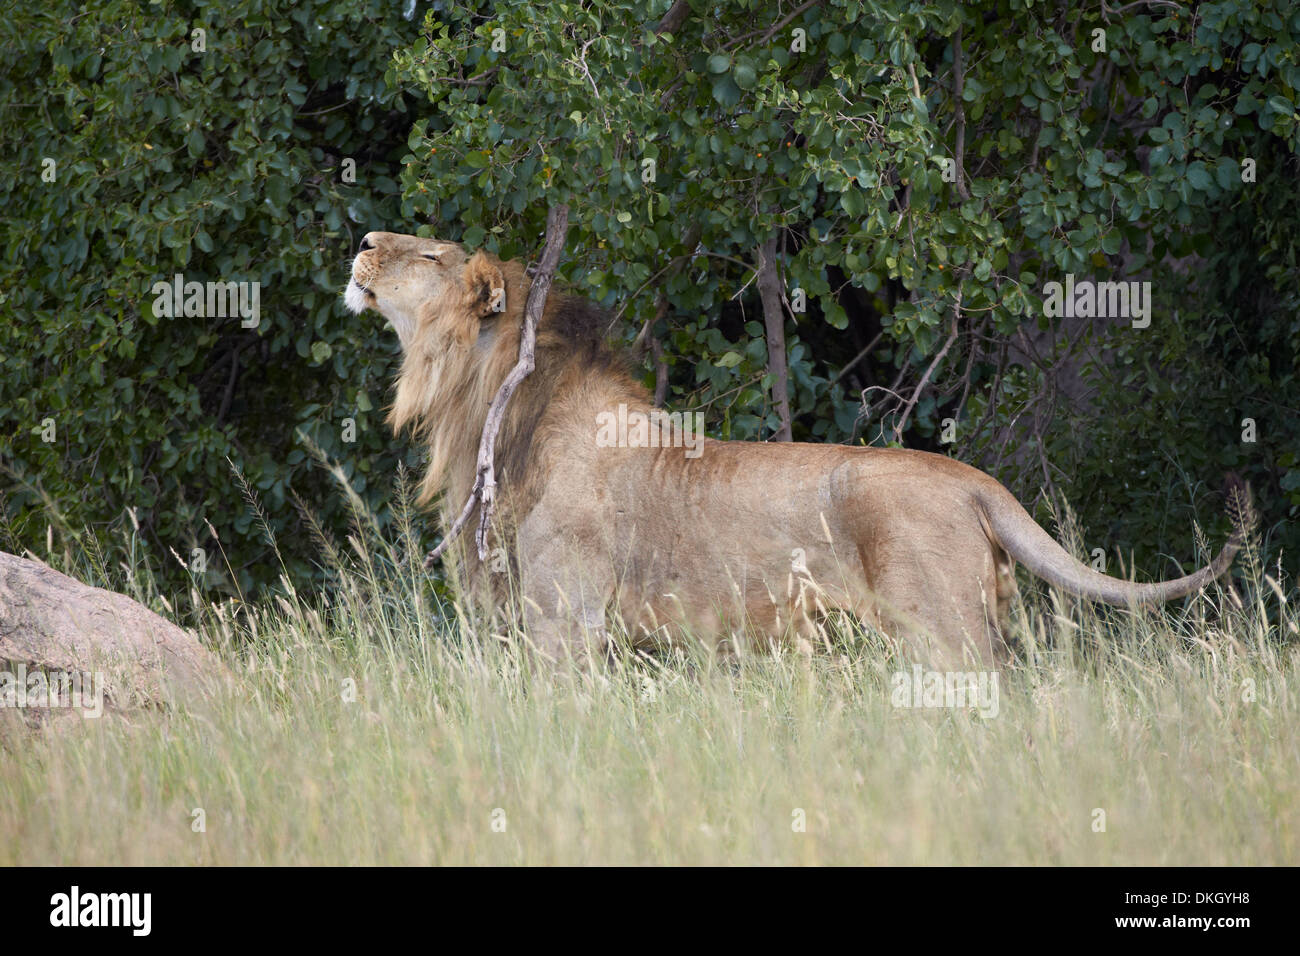 León (Panthera leo) rascarse y marcando el territorio, Parque Nacional del Serengeti, Tanzania, África oriental, África Foto de stock